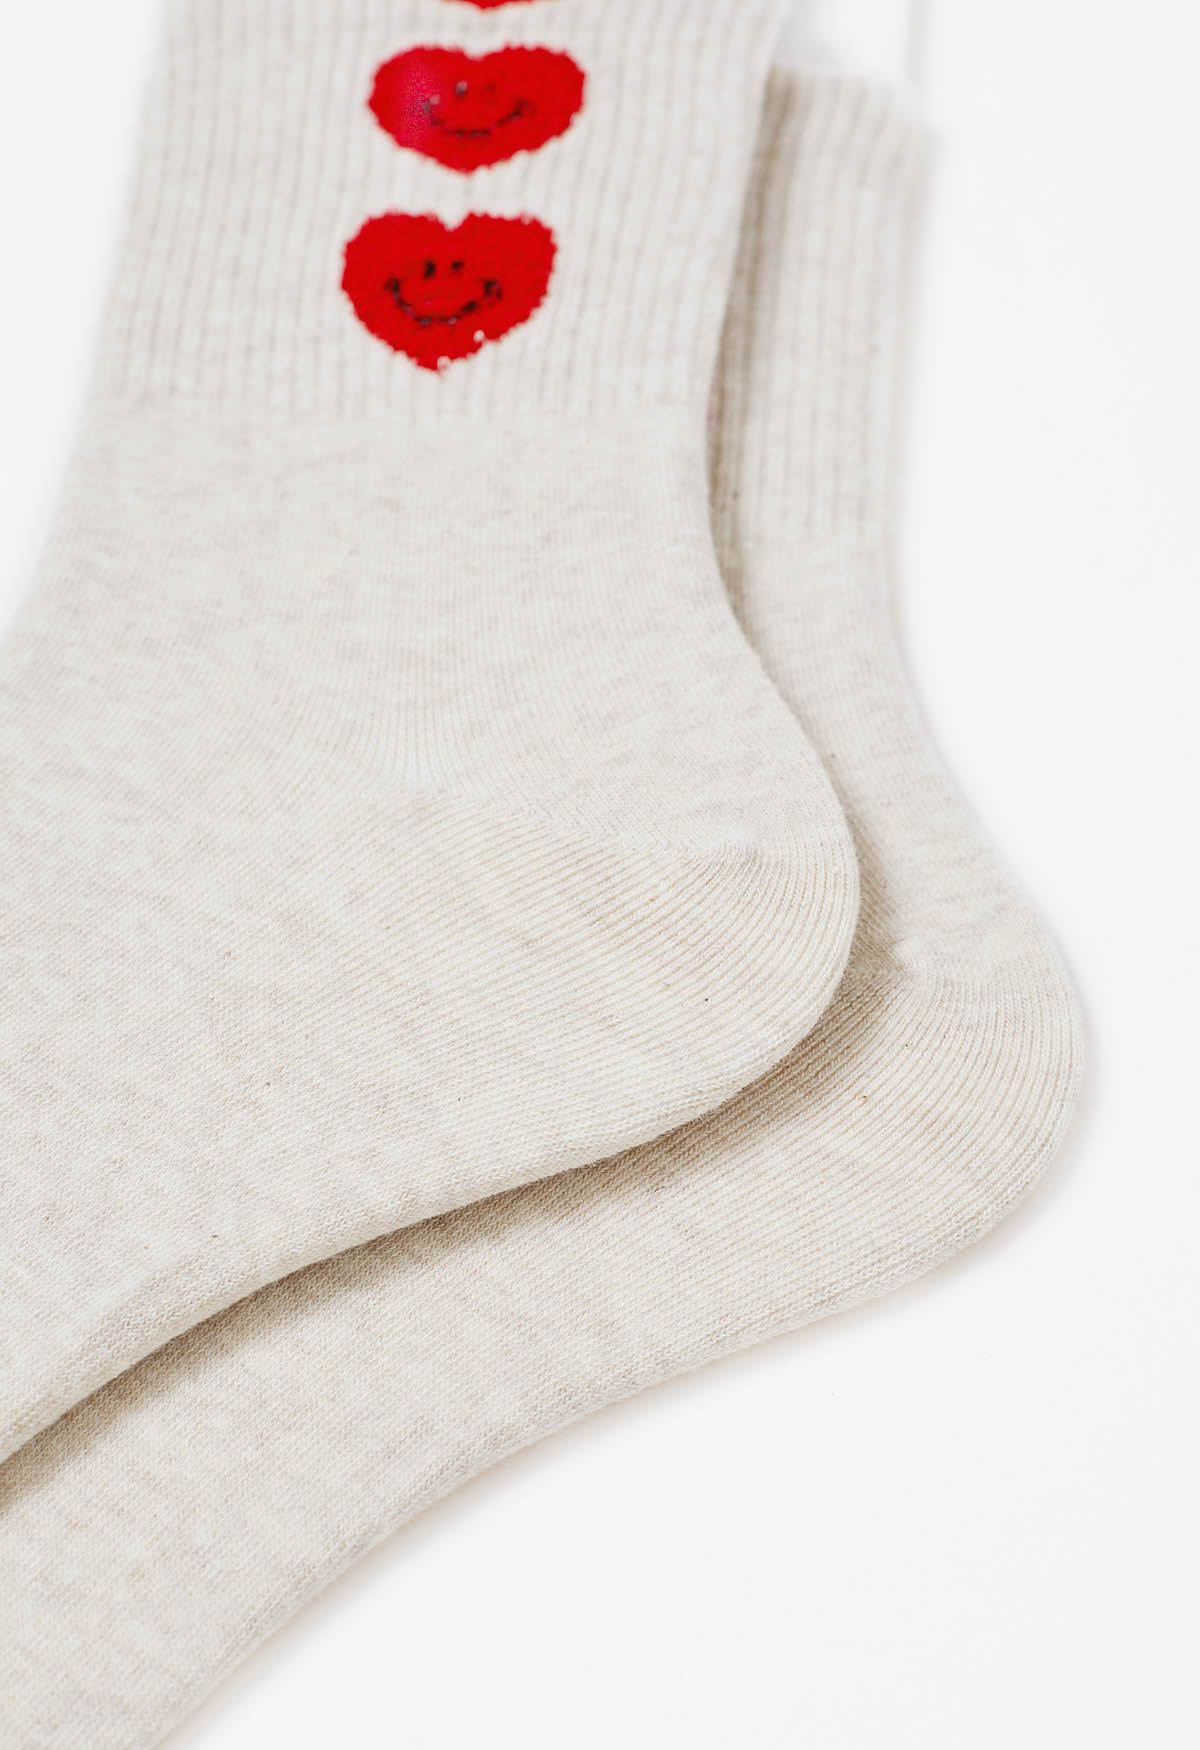 Crew-Socken aus Baumwolle mit lächelndem Gesicht und Herz